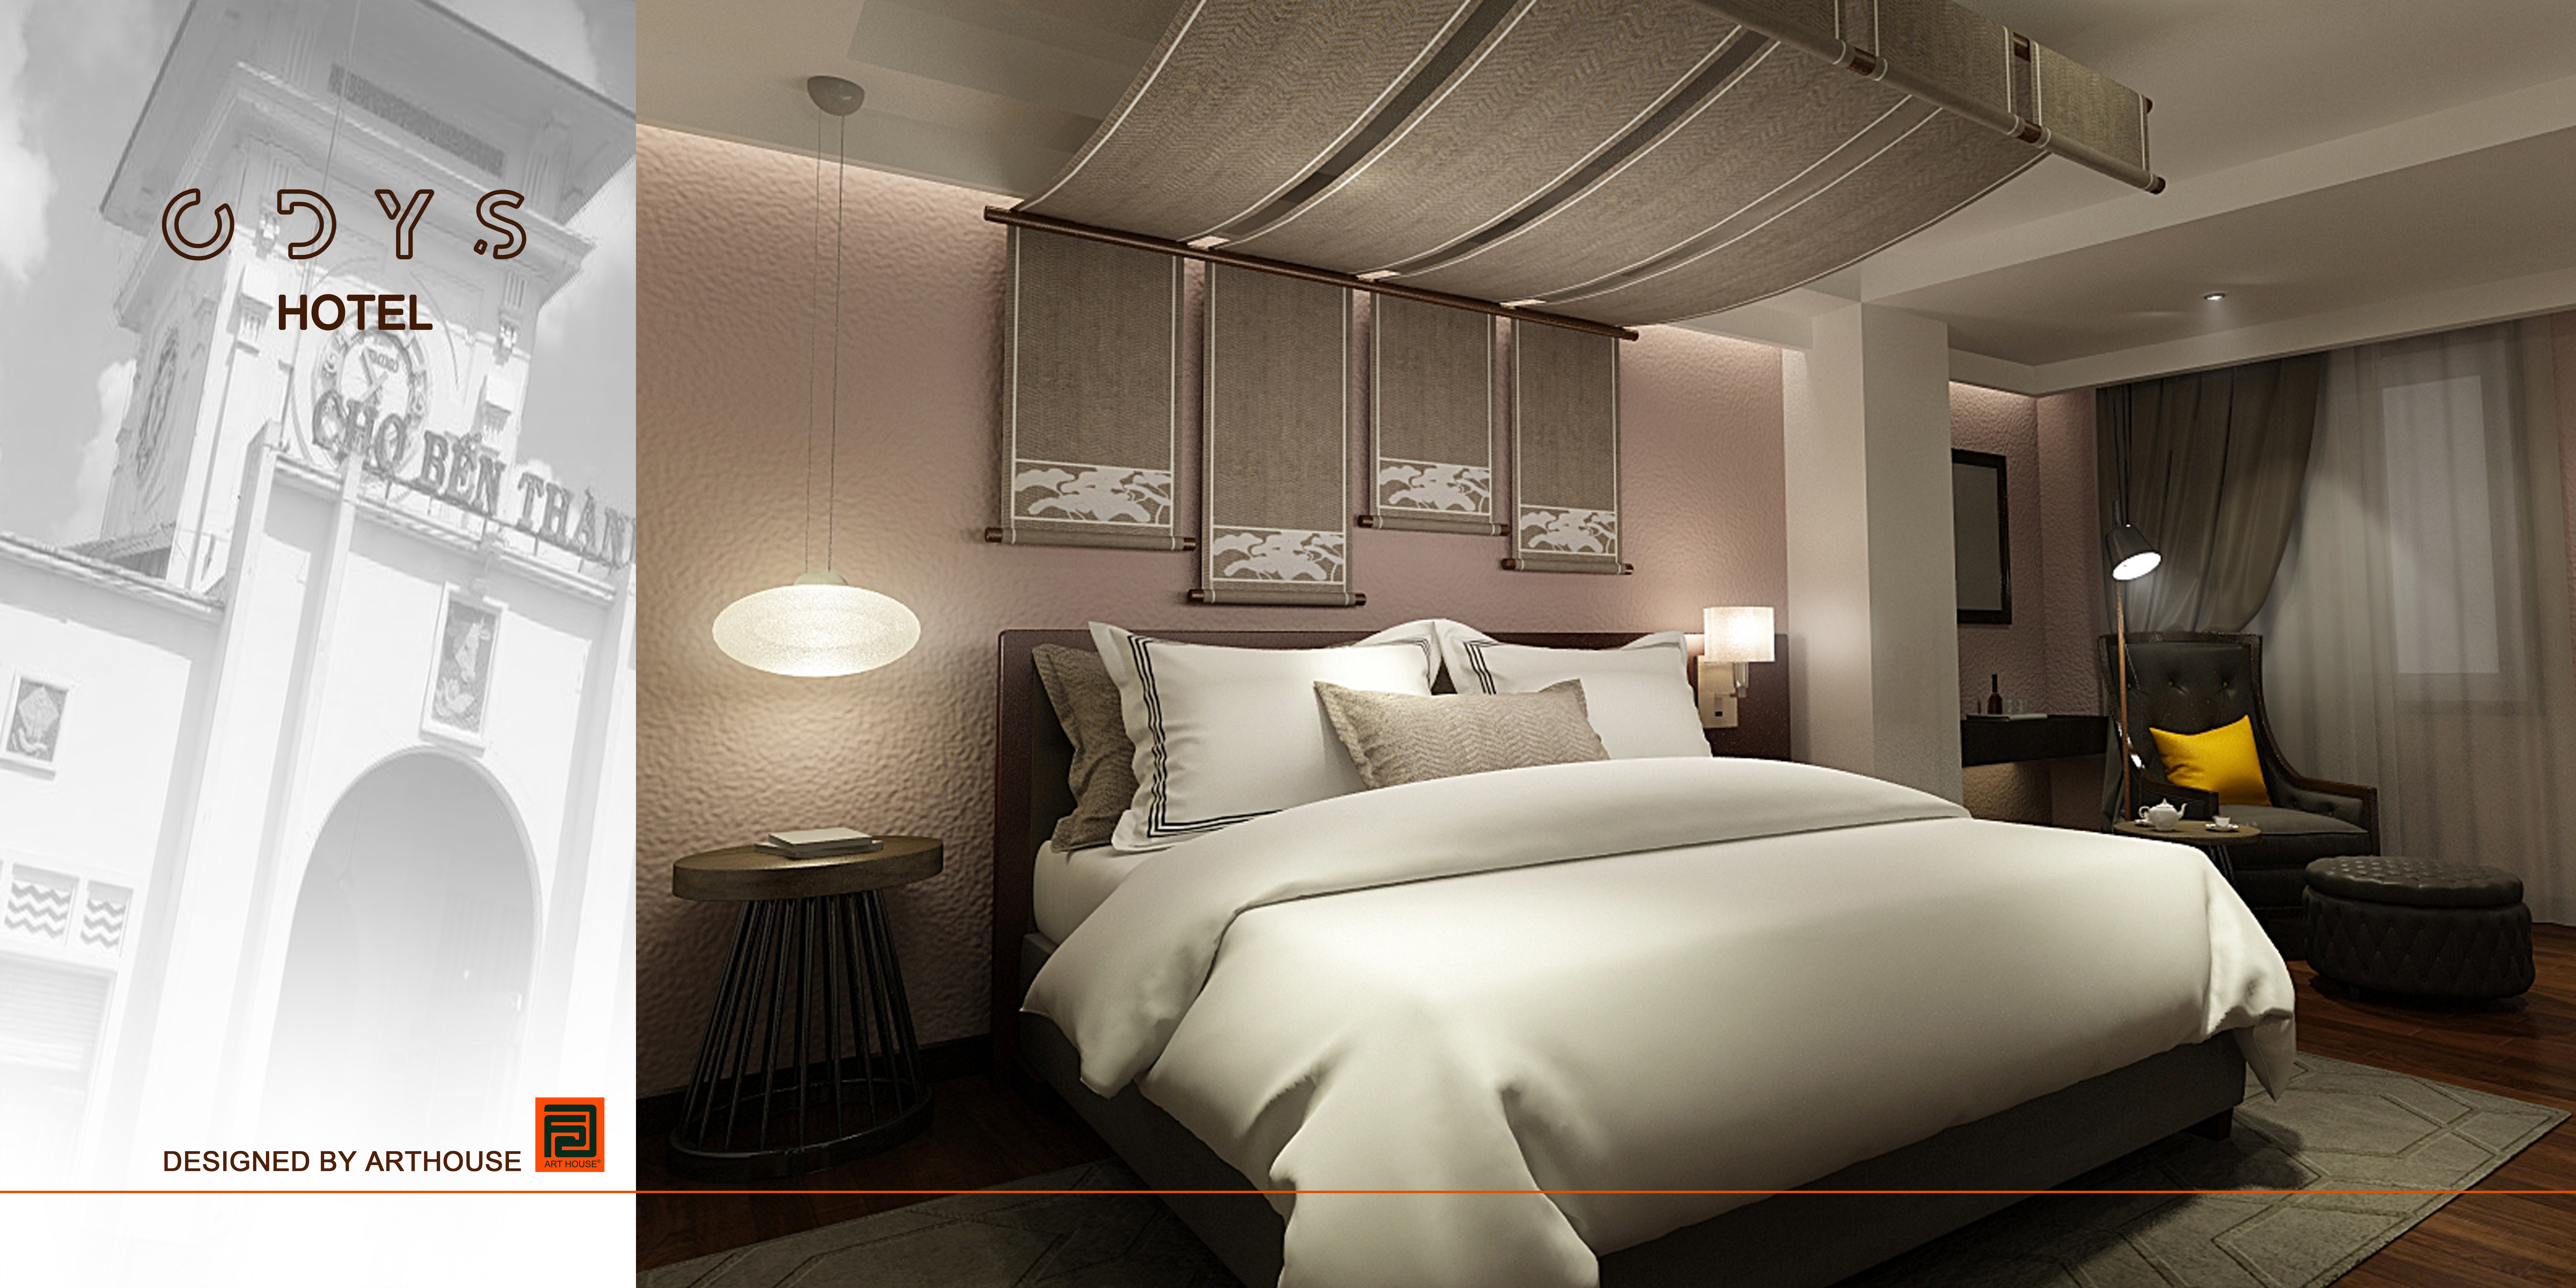 Thiết kế nội thất Khách Sạn tại Hồ Chí Minh Odys Hotel 1599626317 1